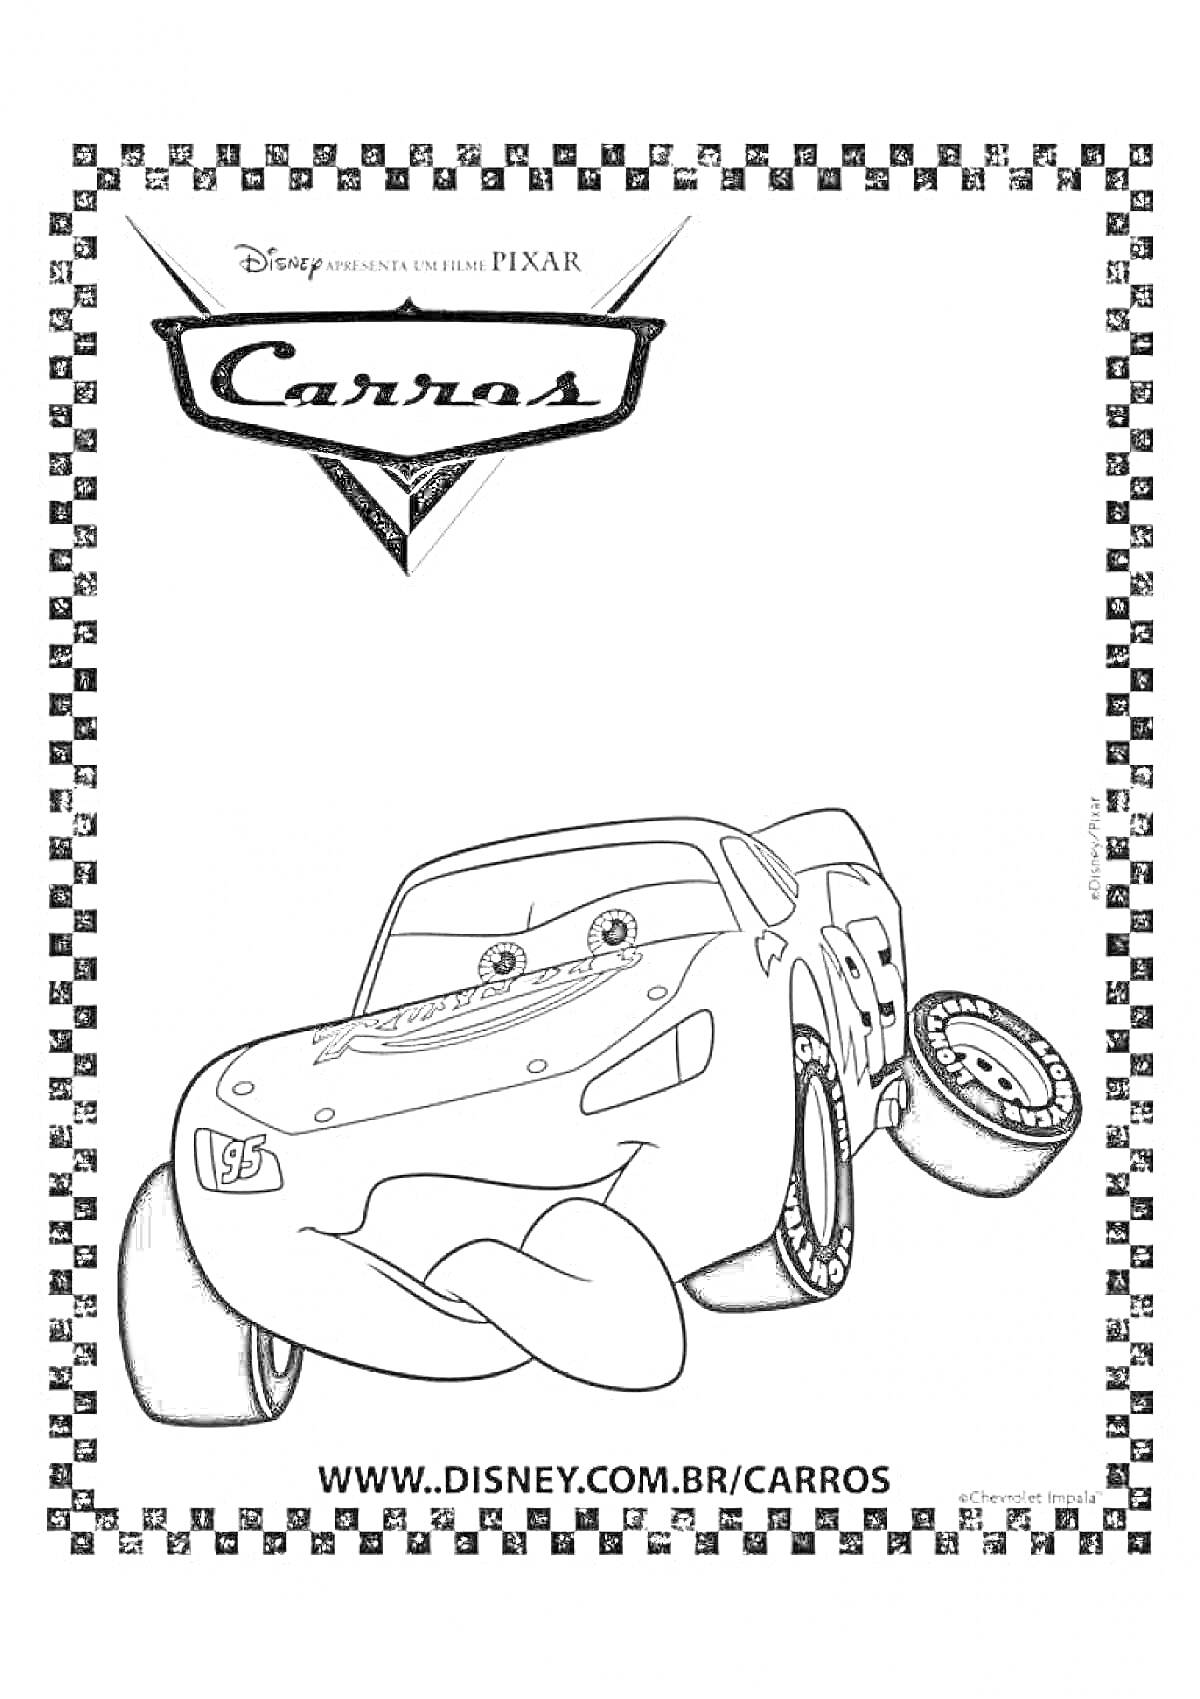 Раскраска Раскраска с тачкой, на которой изображена машинка с глазками, перед любым фоном, в рамке с черно-белыми клетками, с логотипом 